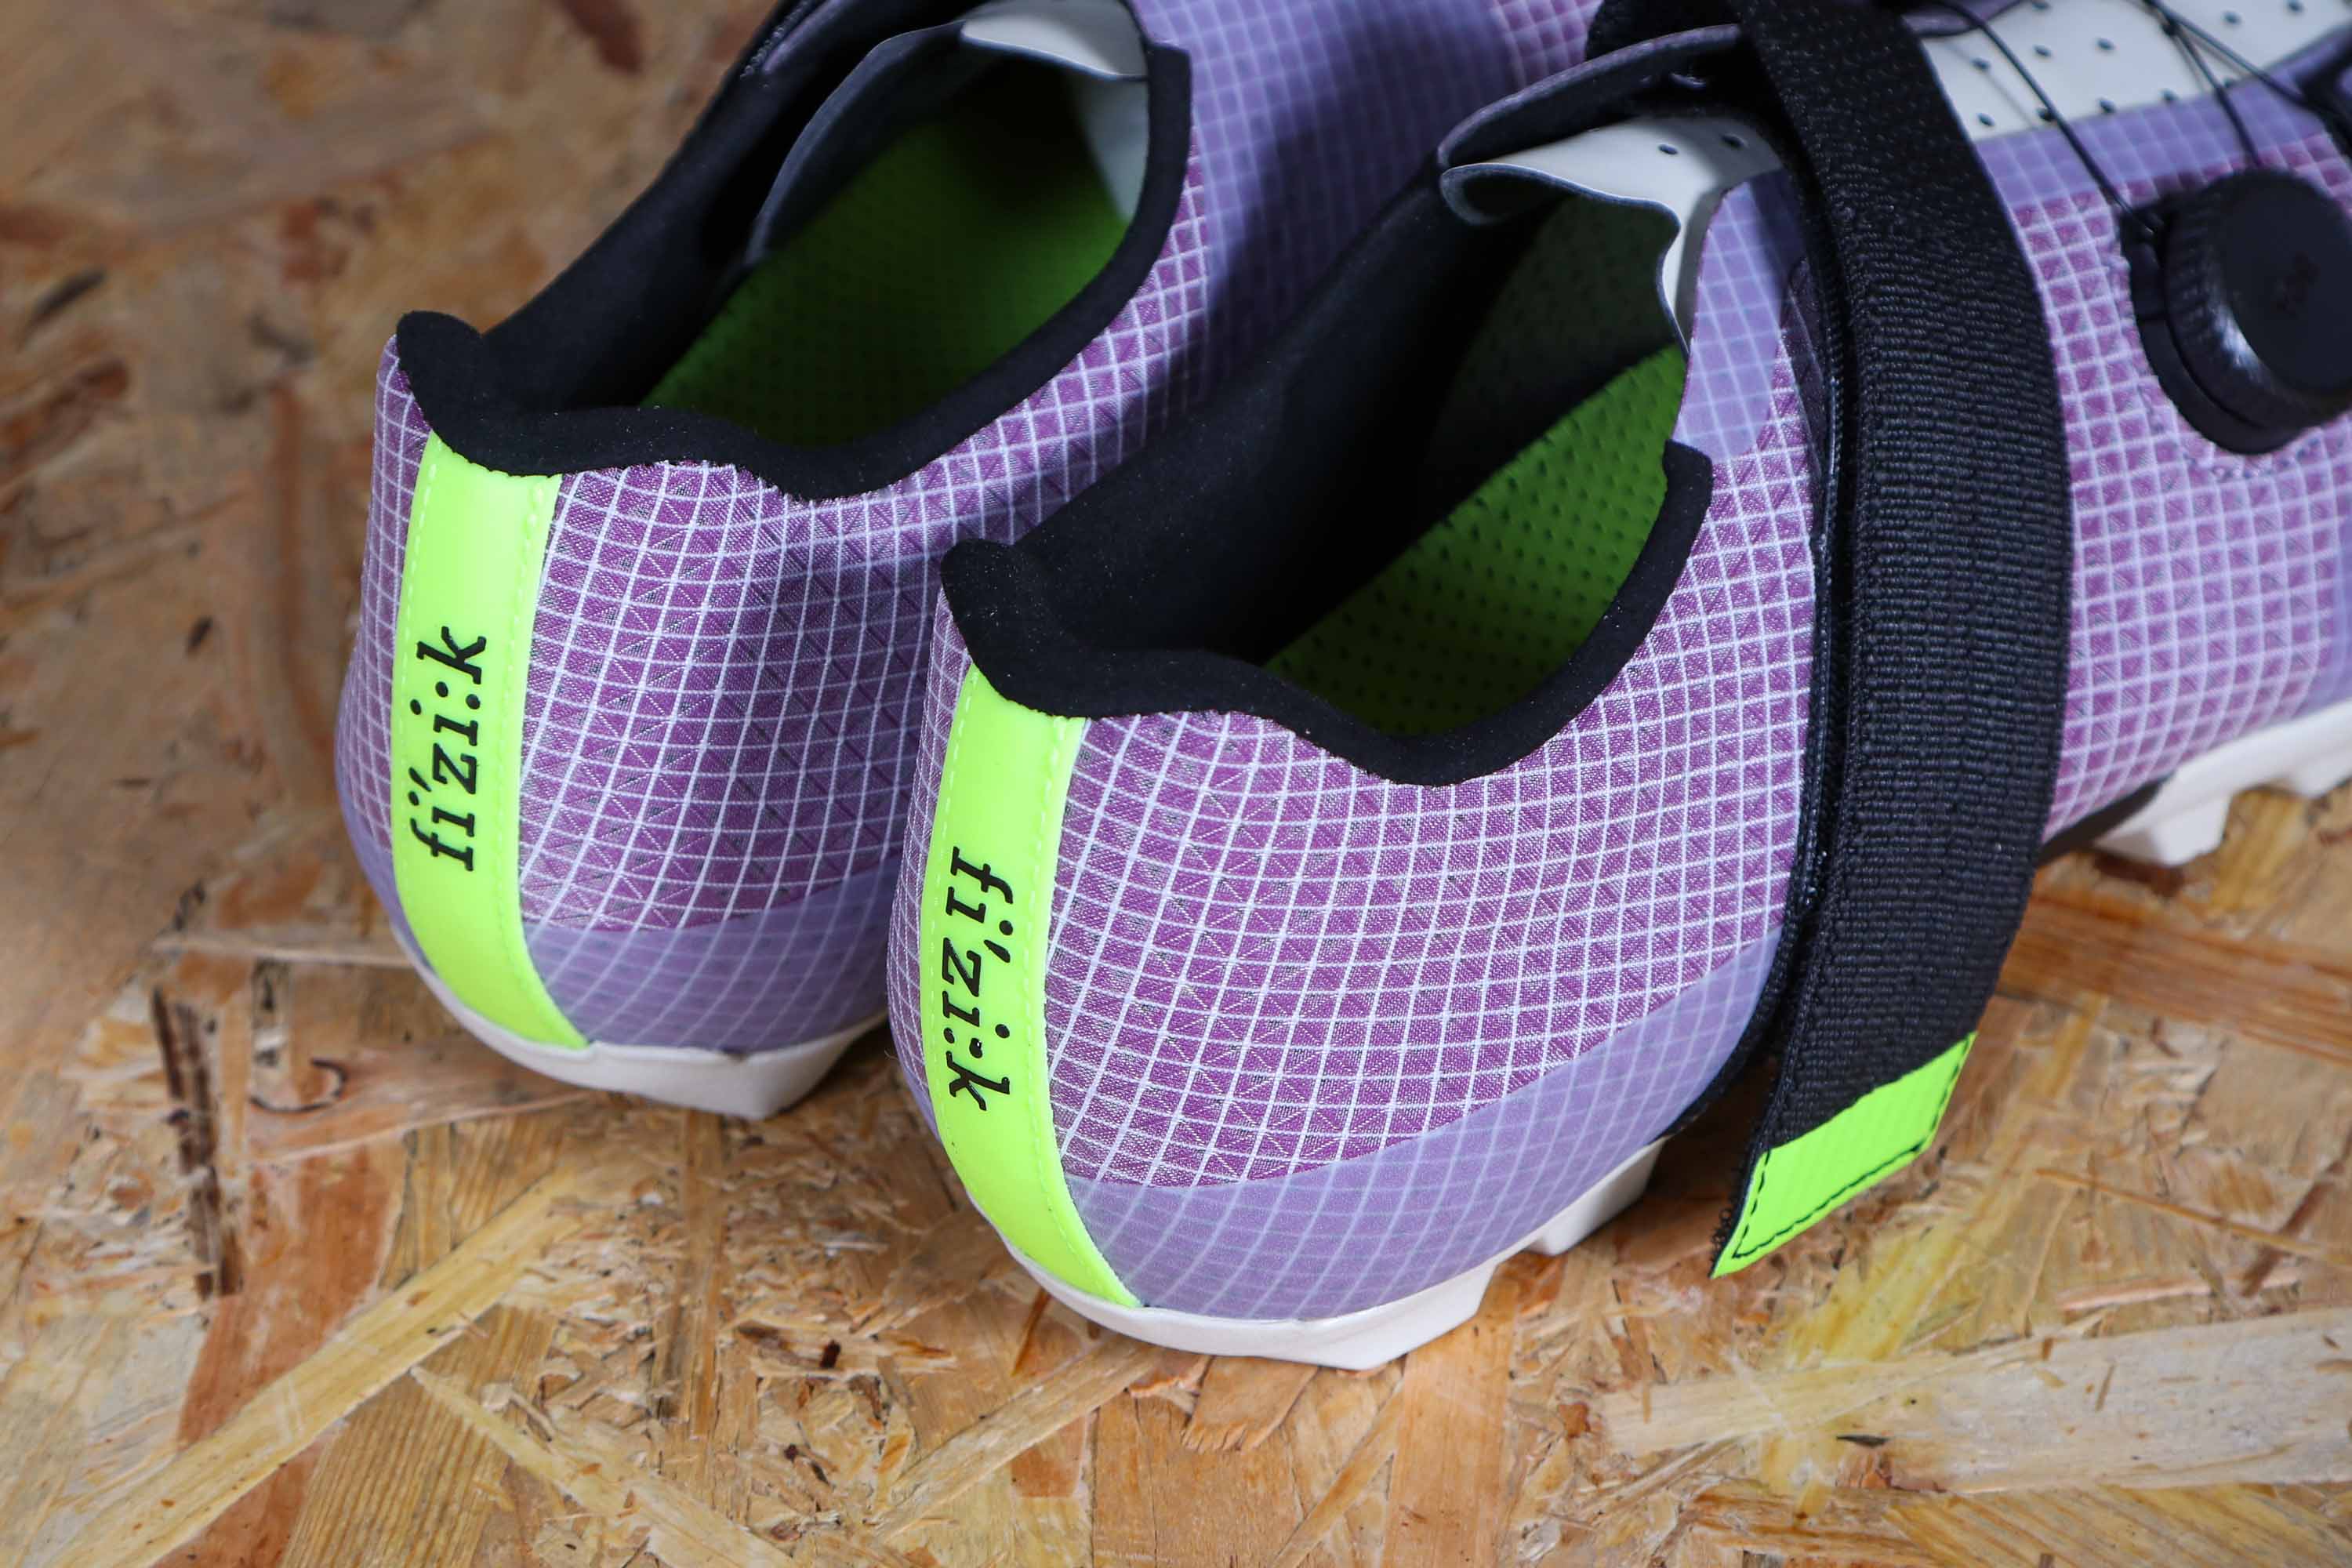 Review: Fizik Vento Ferox Carbon Shoes | road.cc